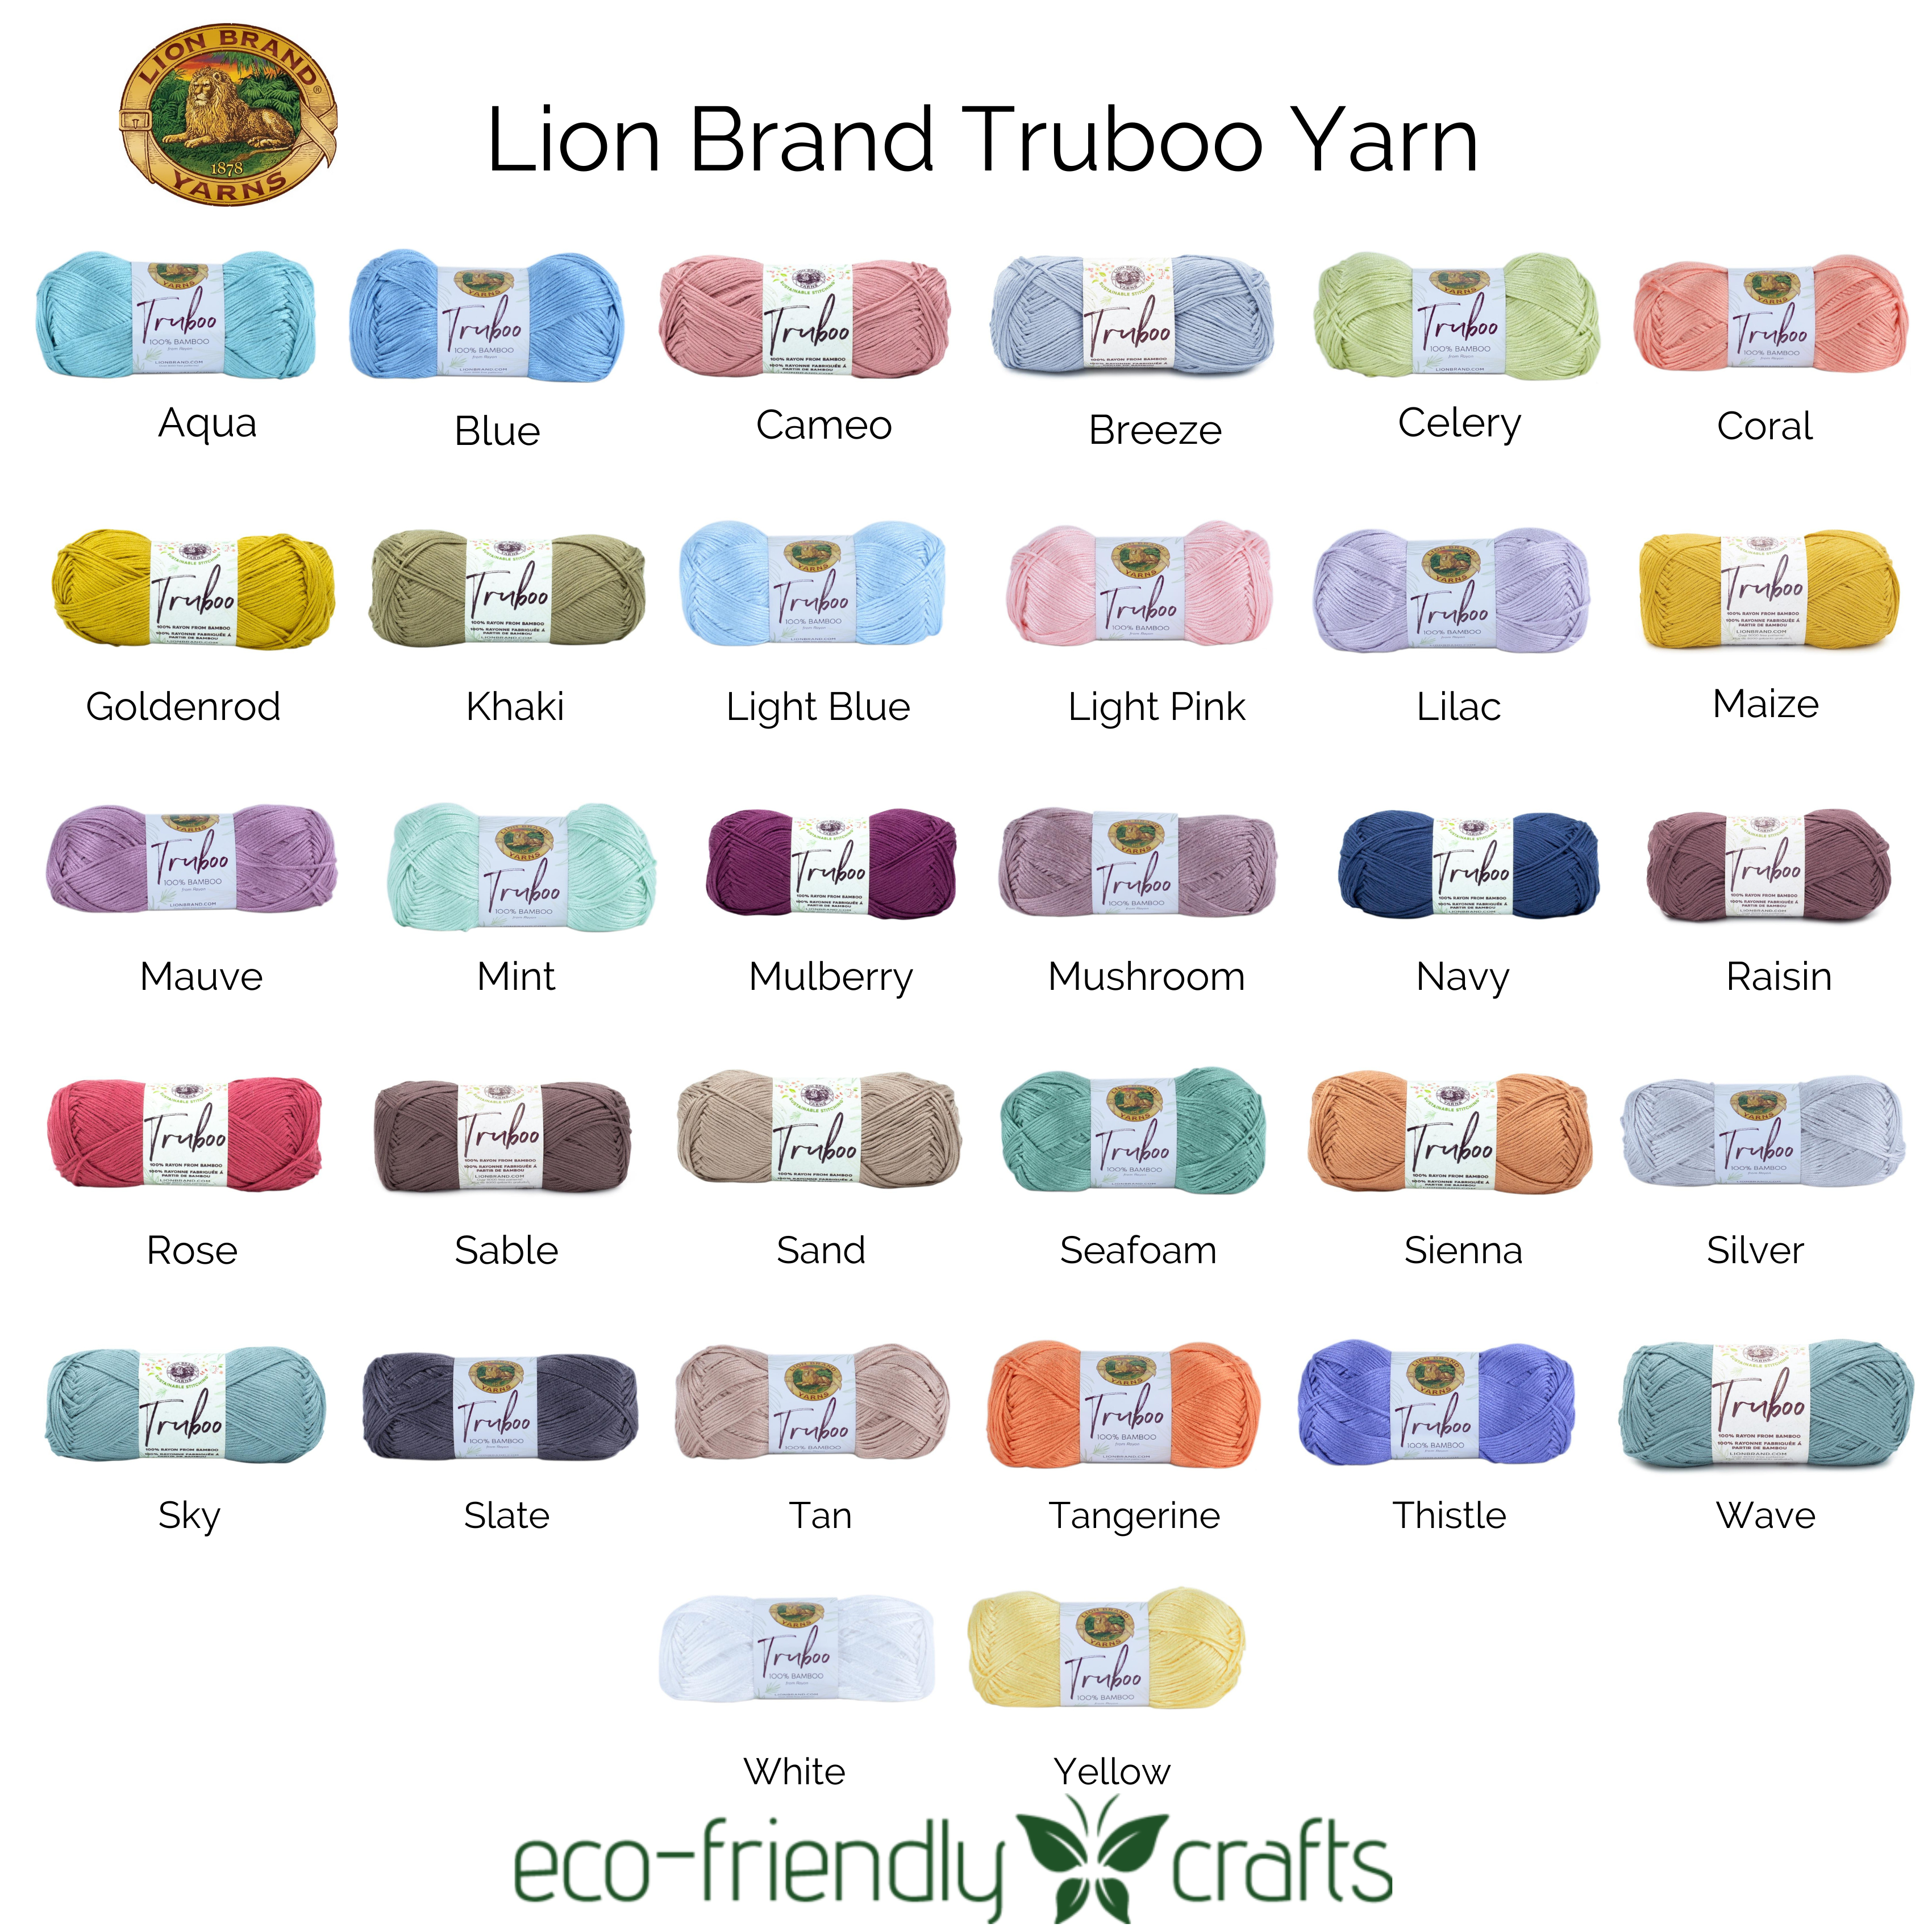 Lion Brand Truboo 3 Light Weight 